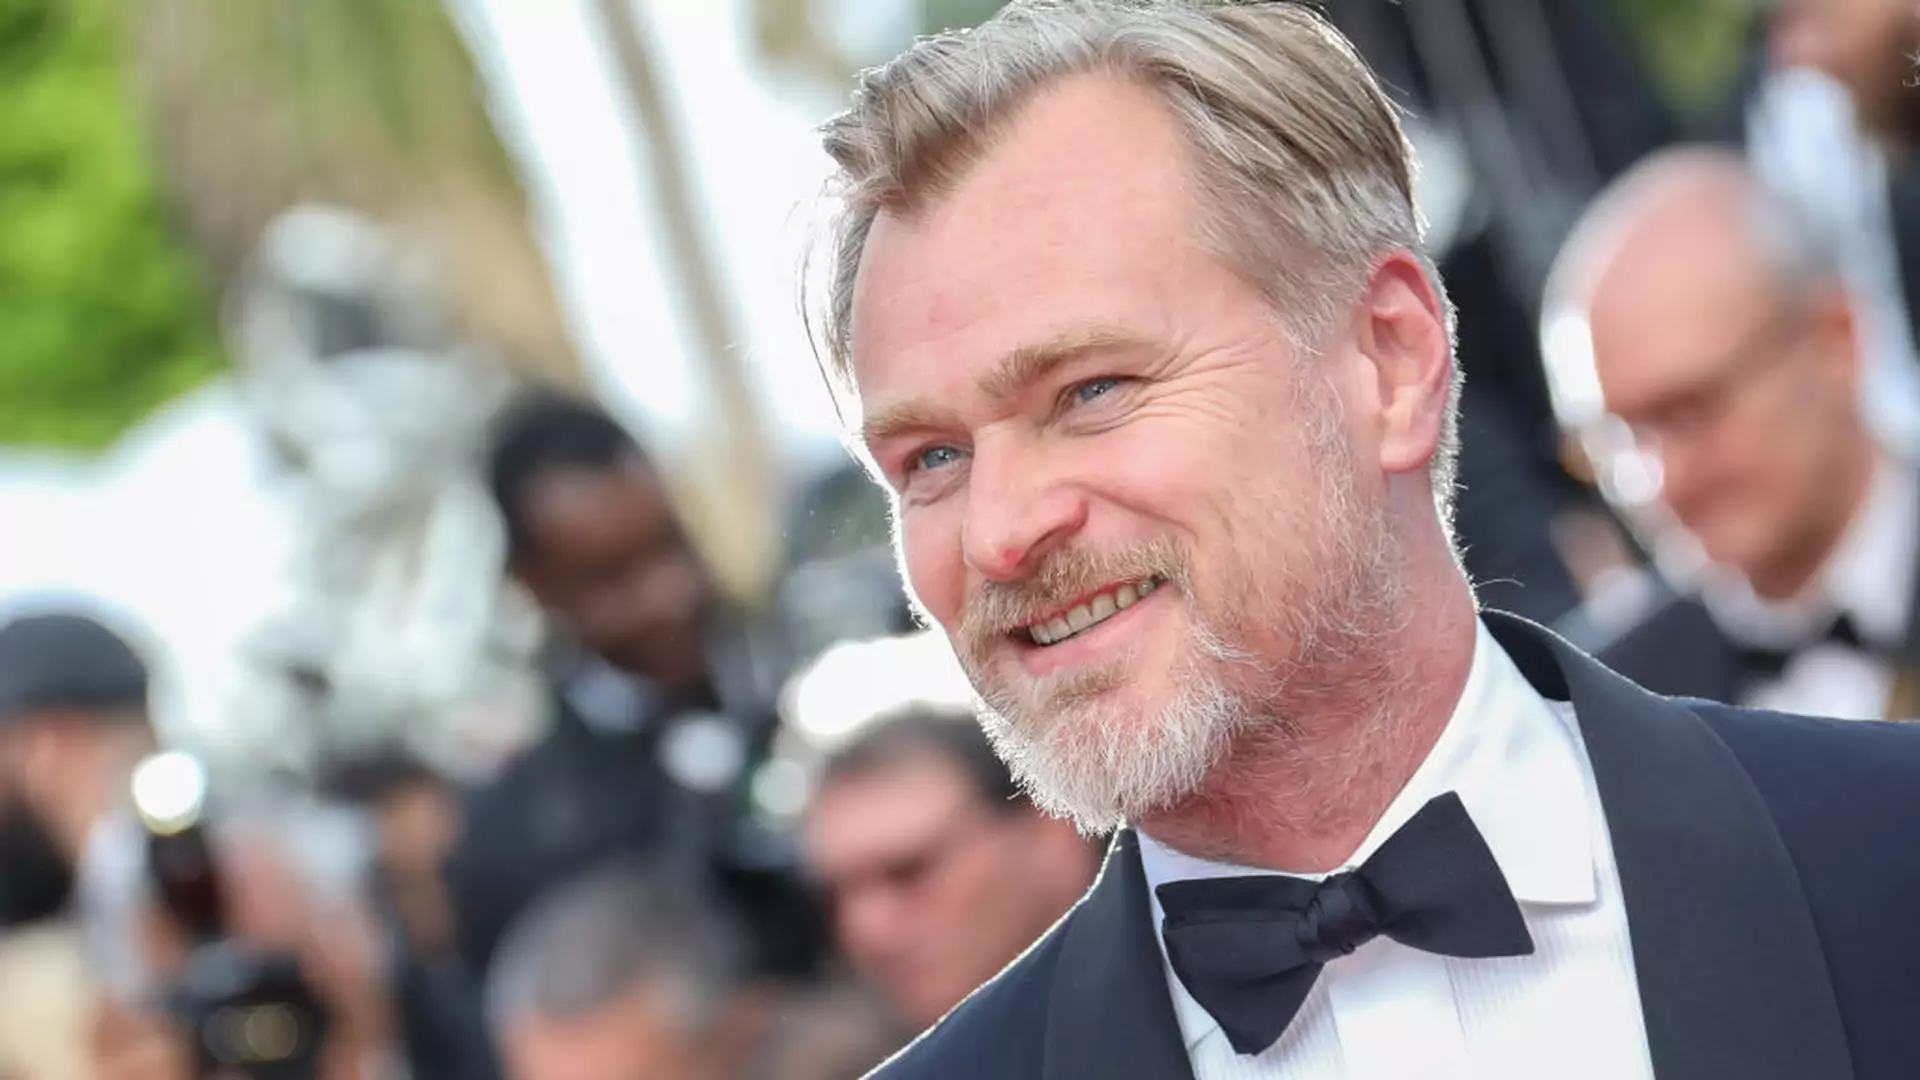 Christopher Nolan kręci jeden najdroższych filmów w historii kina. O czym będzie "Tenet"?